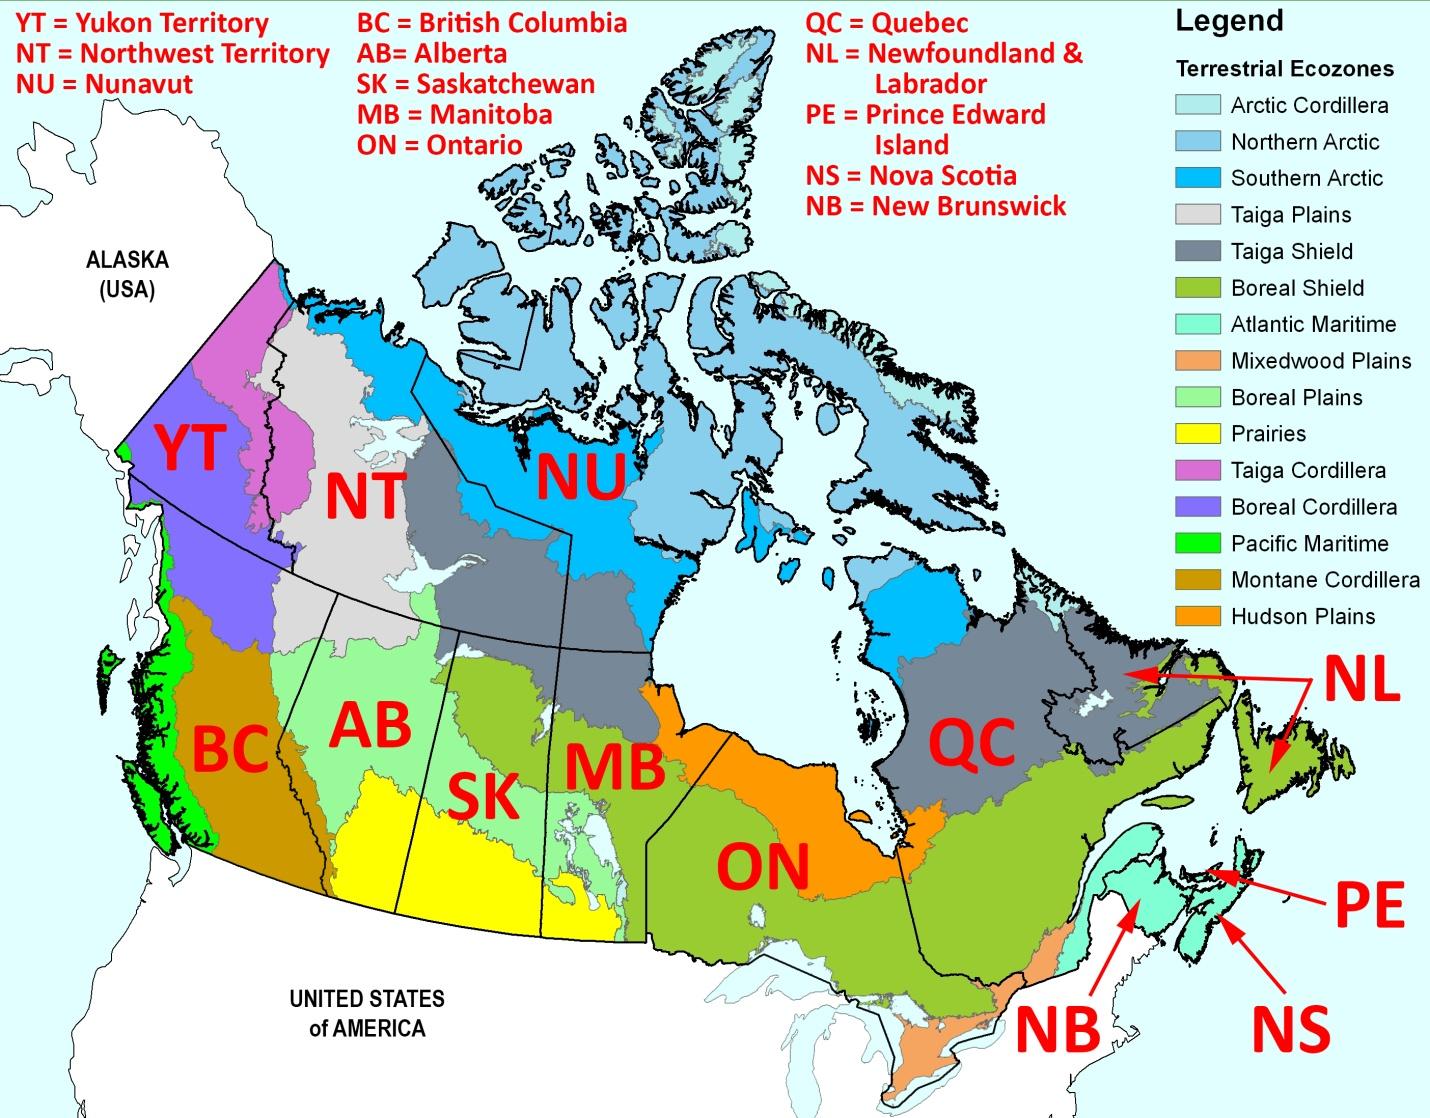 Map of Canada showing terrestrial ecozones